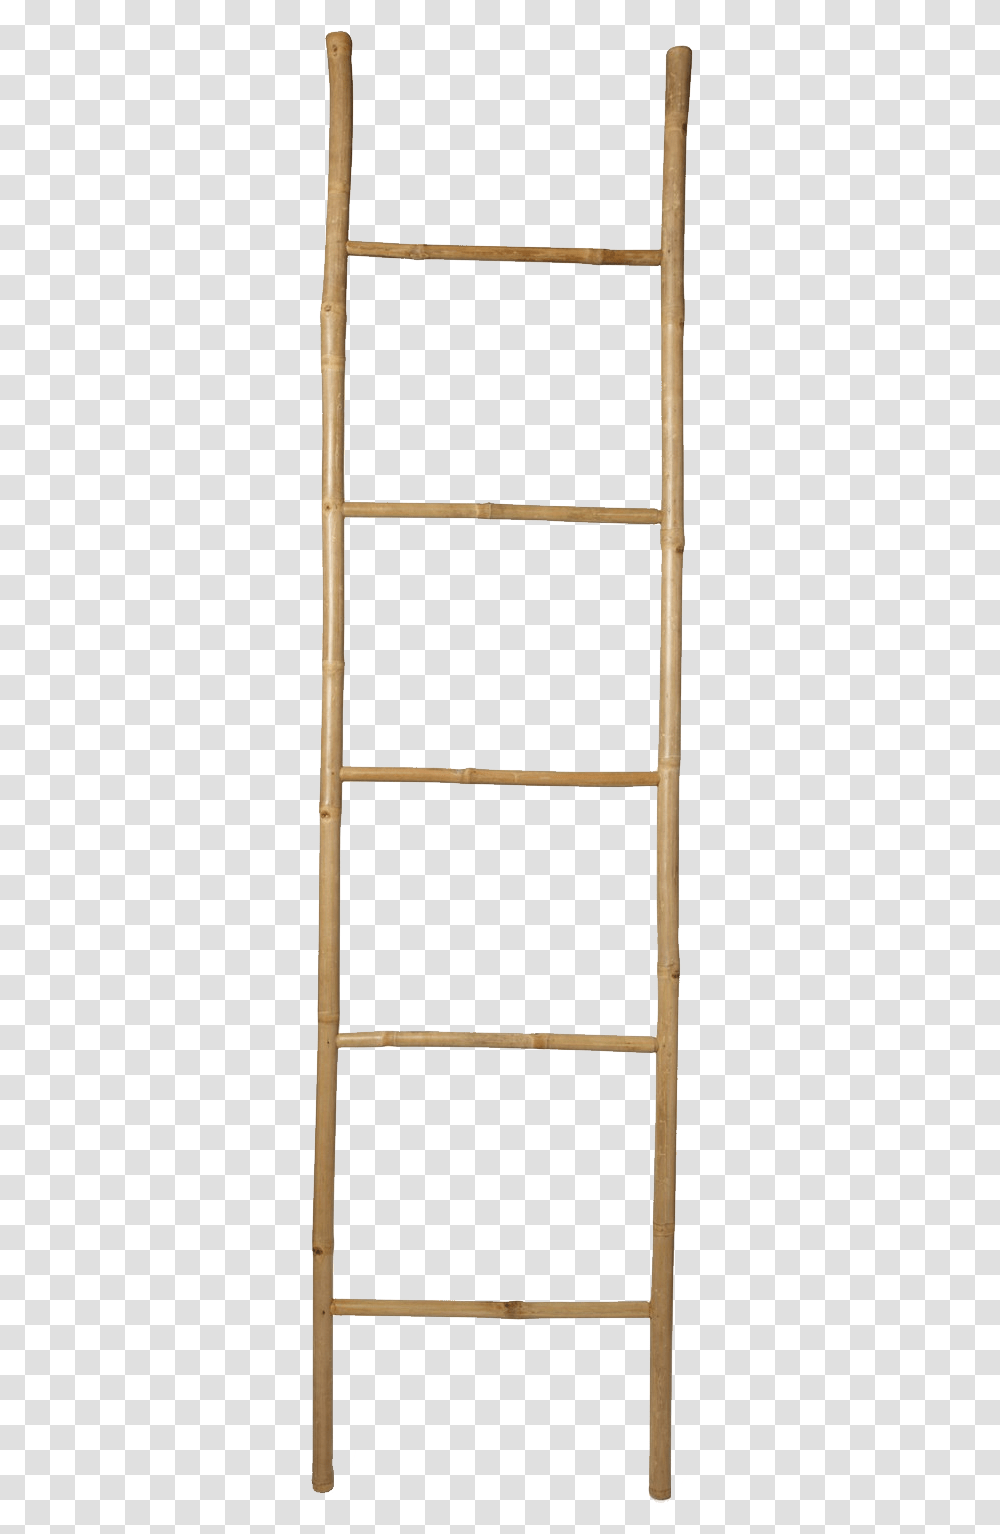 Wood Ladder Background Ladder, Stand, Shop, Furniture, Table Transparent Png